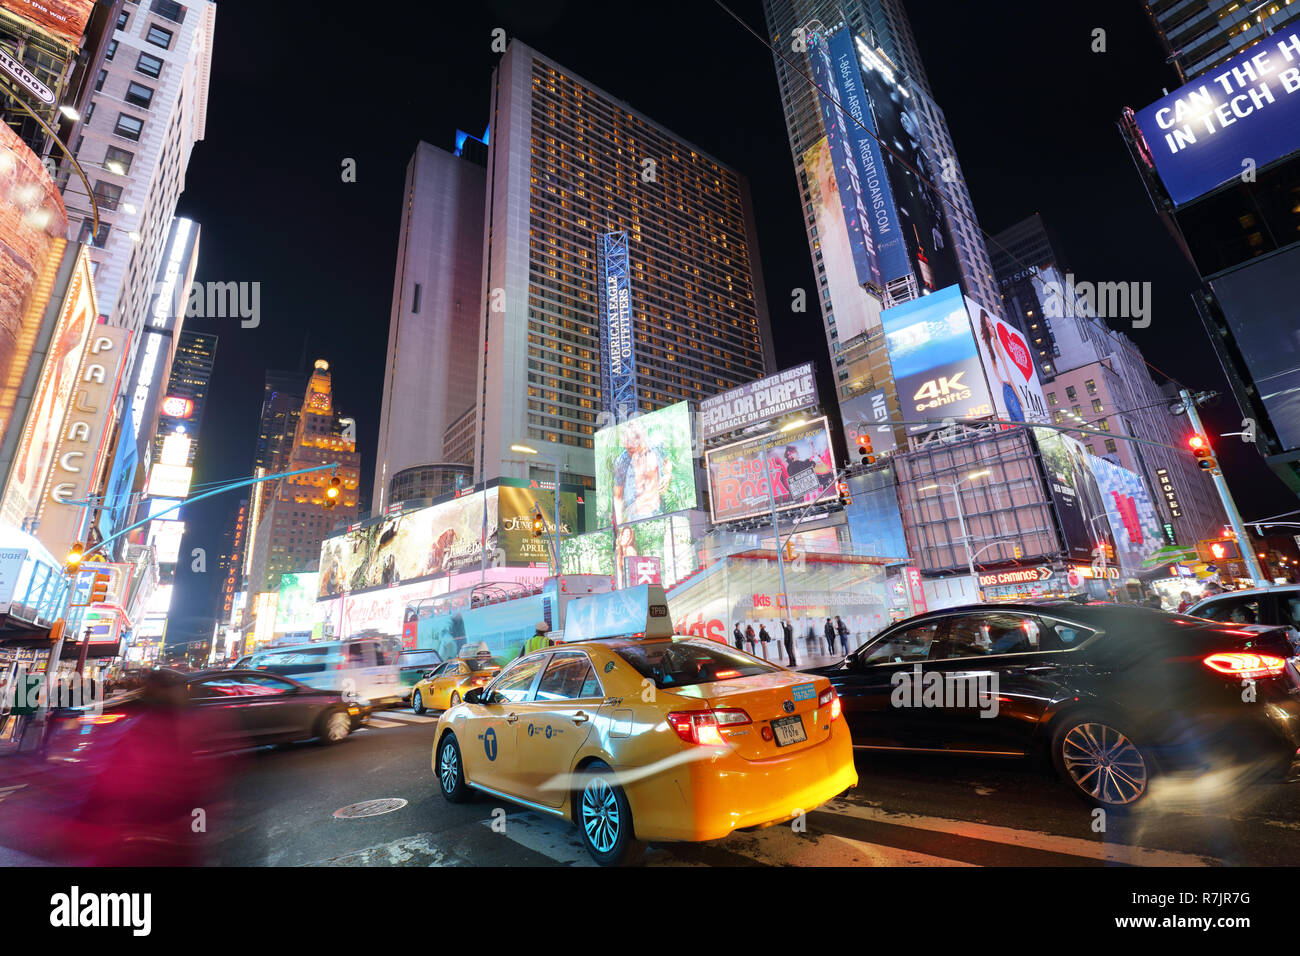 https://c8.alamy.com/compfr/r7jr7g/new-york-usa-12-avril-l-architecture-du-celebre-times-square-a-new-york-city-usa-avec-ses-neons-et-panneaux-de-nuit-et-beaucoup-de-tour-r7jr7g.jpg